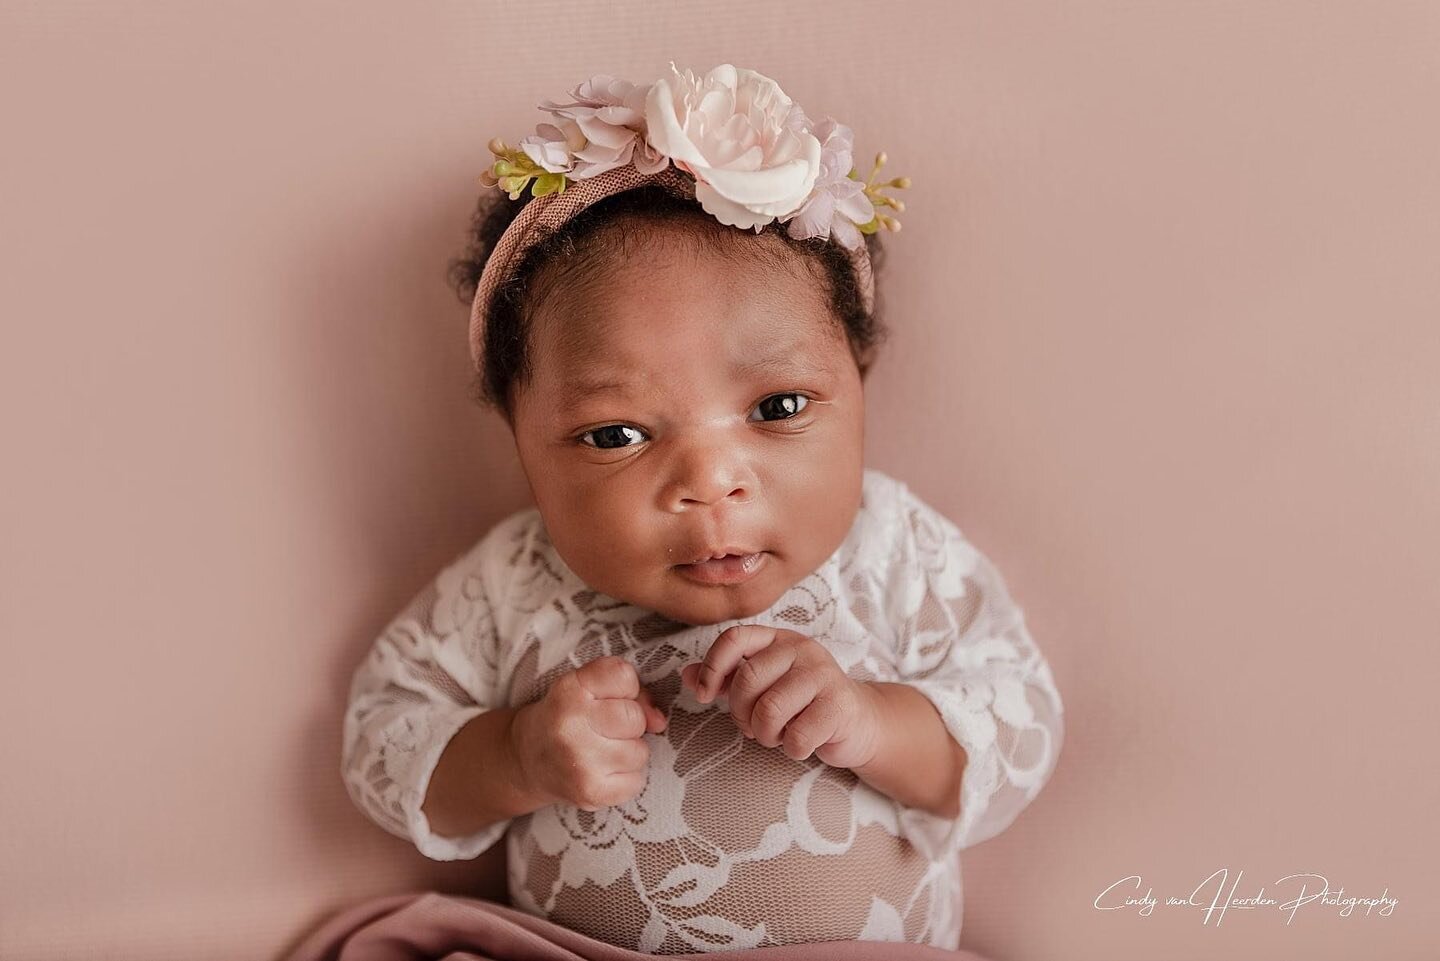 Avethandwa 🥰🌸

#babygirl #newbornbaby #capetownbabies